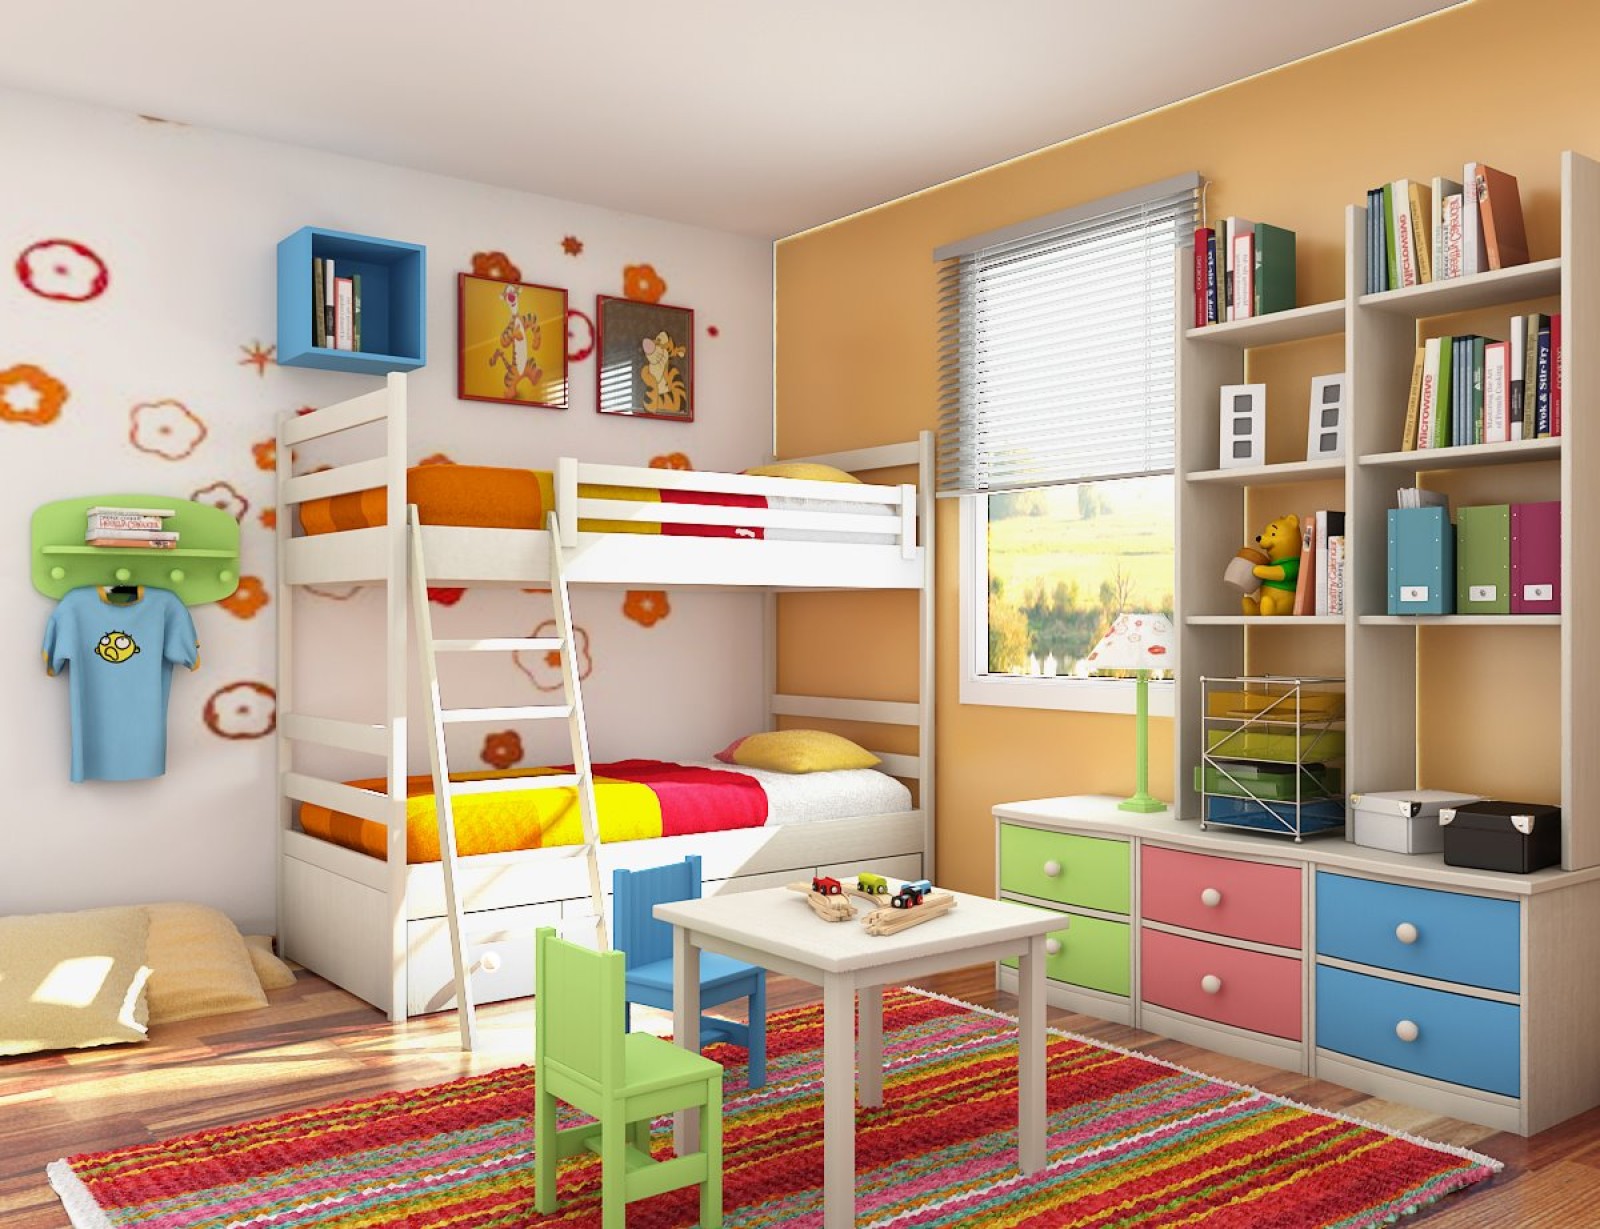 Besides Tectonic nightmare 5 idei distractive despre cum sa amenajezi o camera pentru 2 copii |  KIDmagia